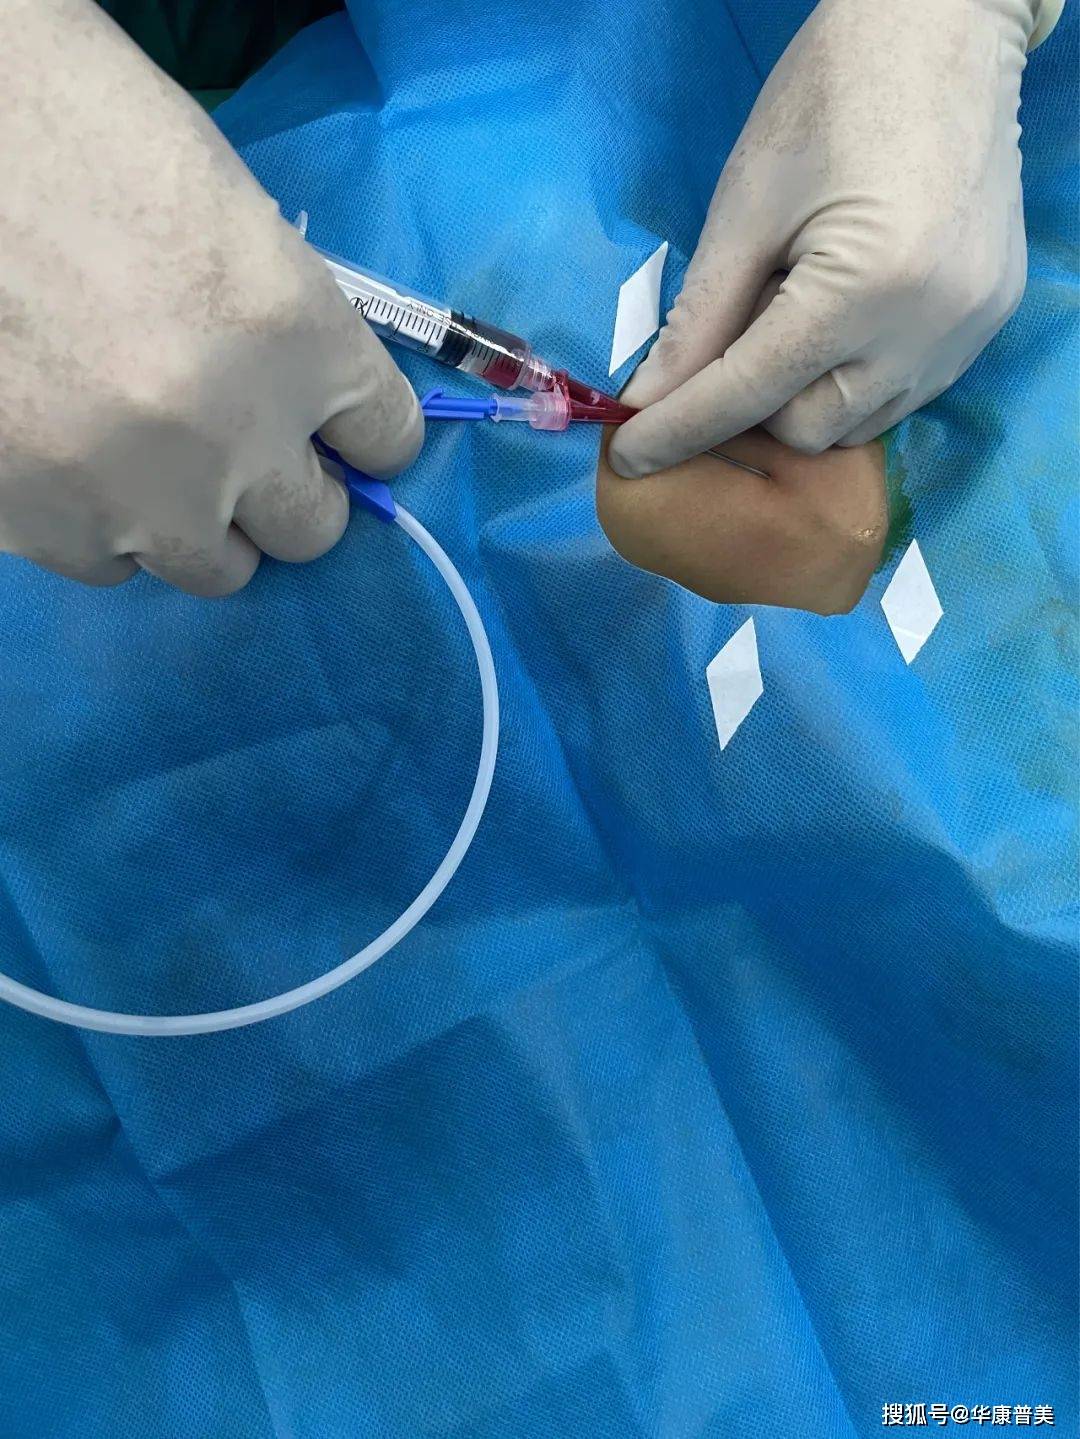 股静脉穿刺置管术步骤图片